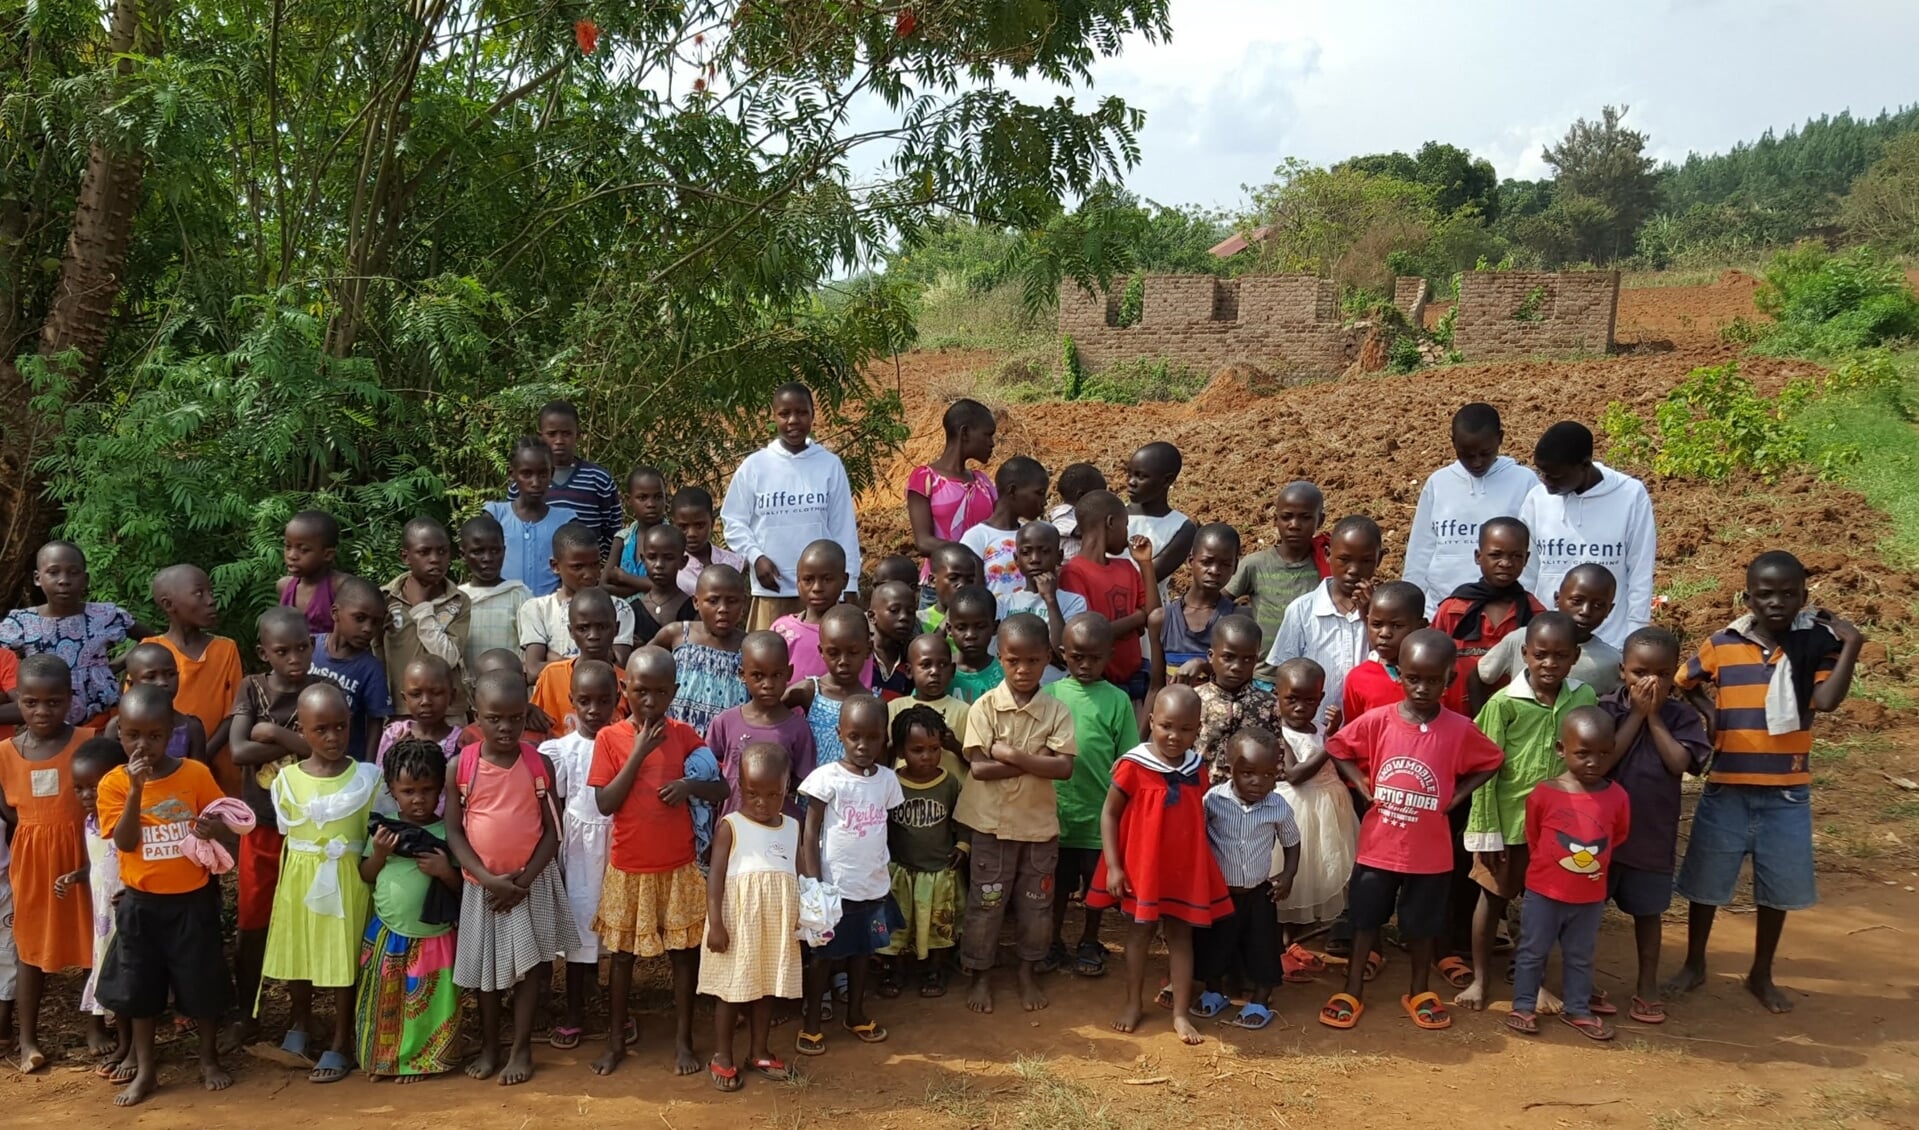 Met de aankoop van speculaas wordt het project van Joanne Foundation in Oeganda gesteund. Foto: PR